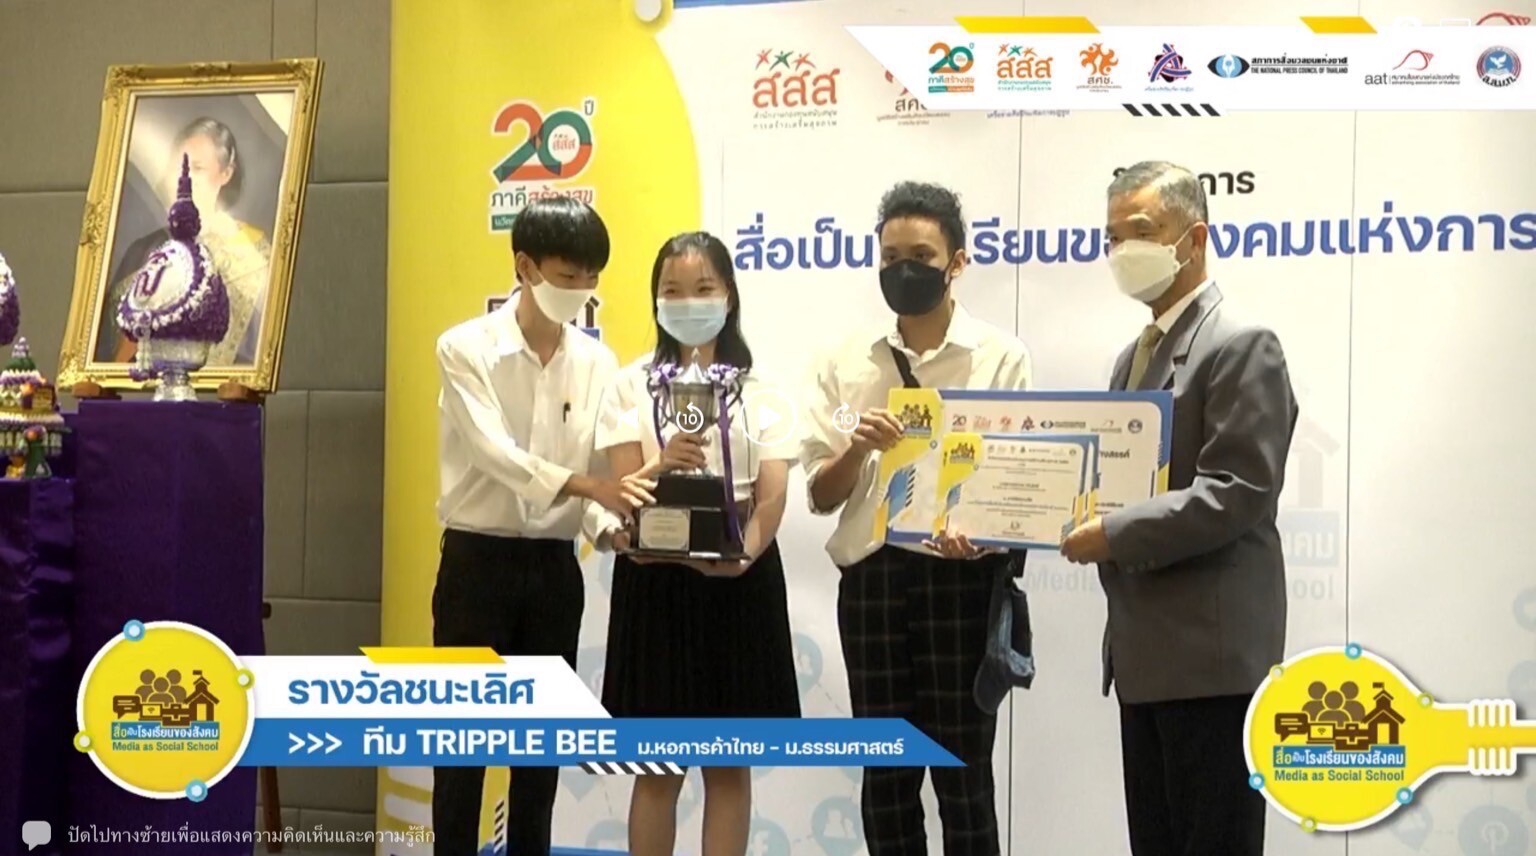 นักศึกษานิเทศฯ ม.หอการค้าไทย รับรางวัลควบชนะเลิศและรางวัลชมเชย